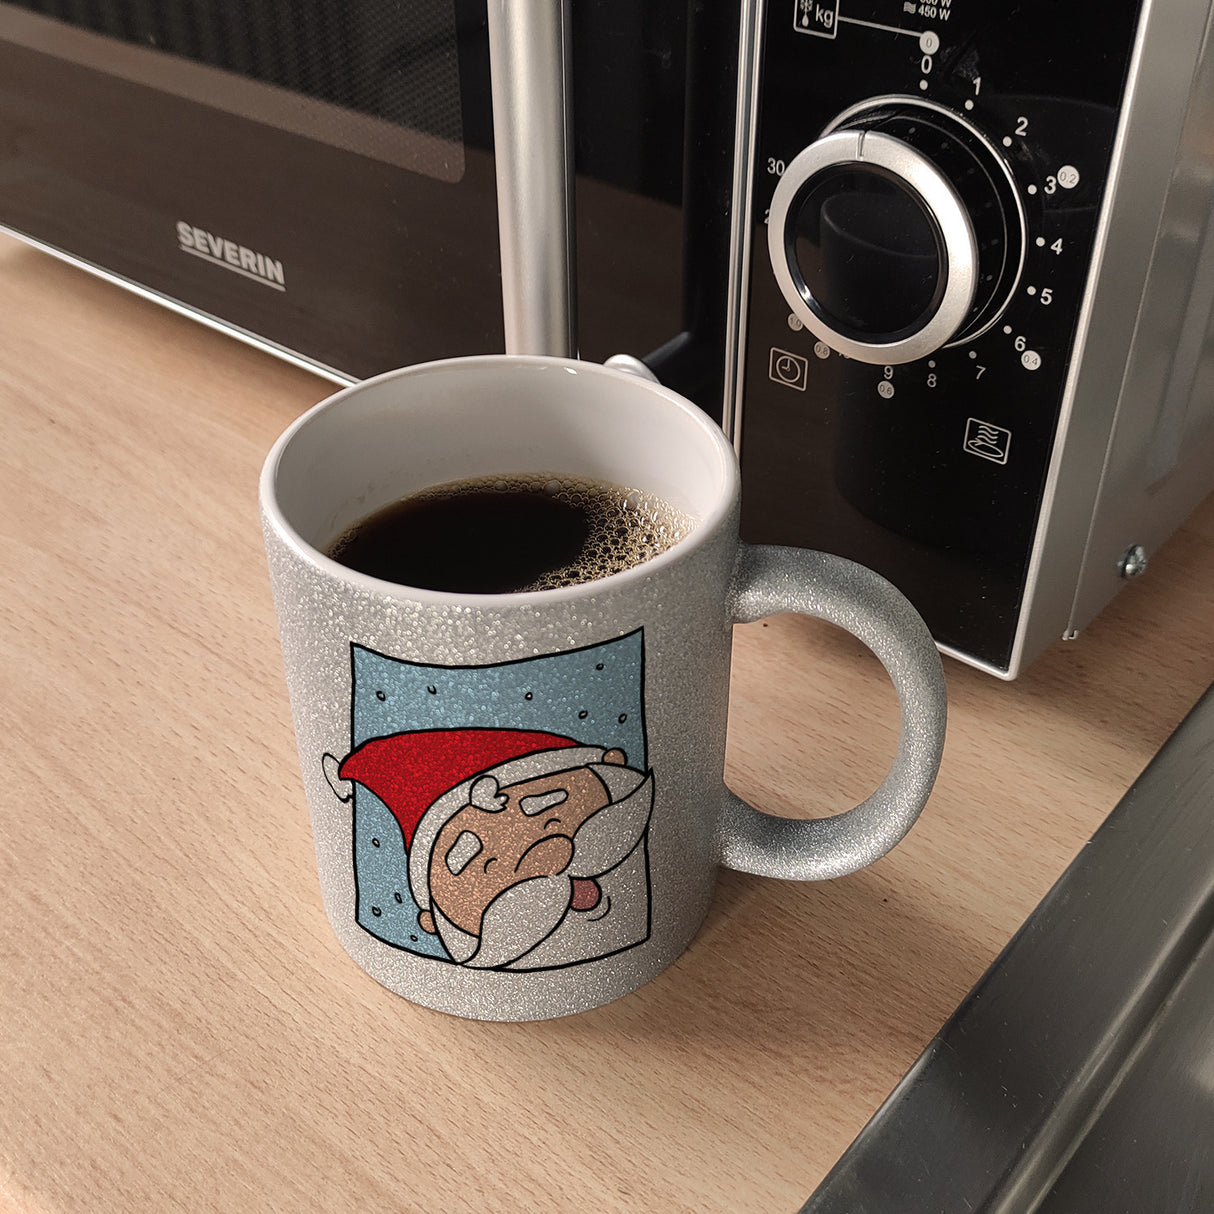 Rentier & Weihnachtsmann Kaffeebecher